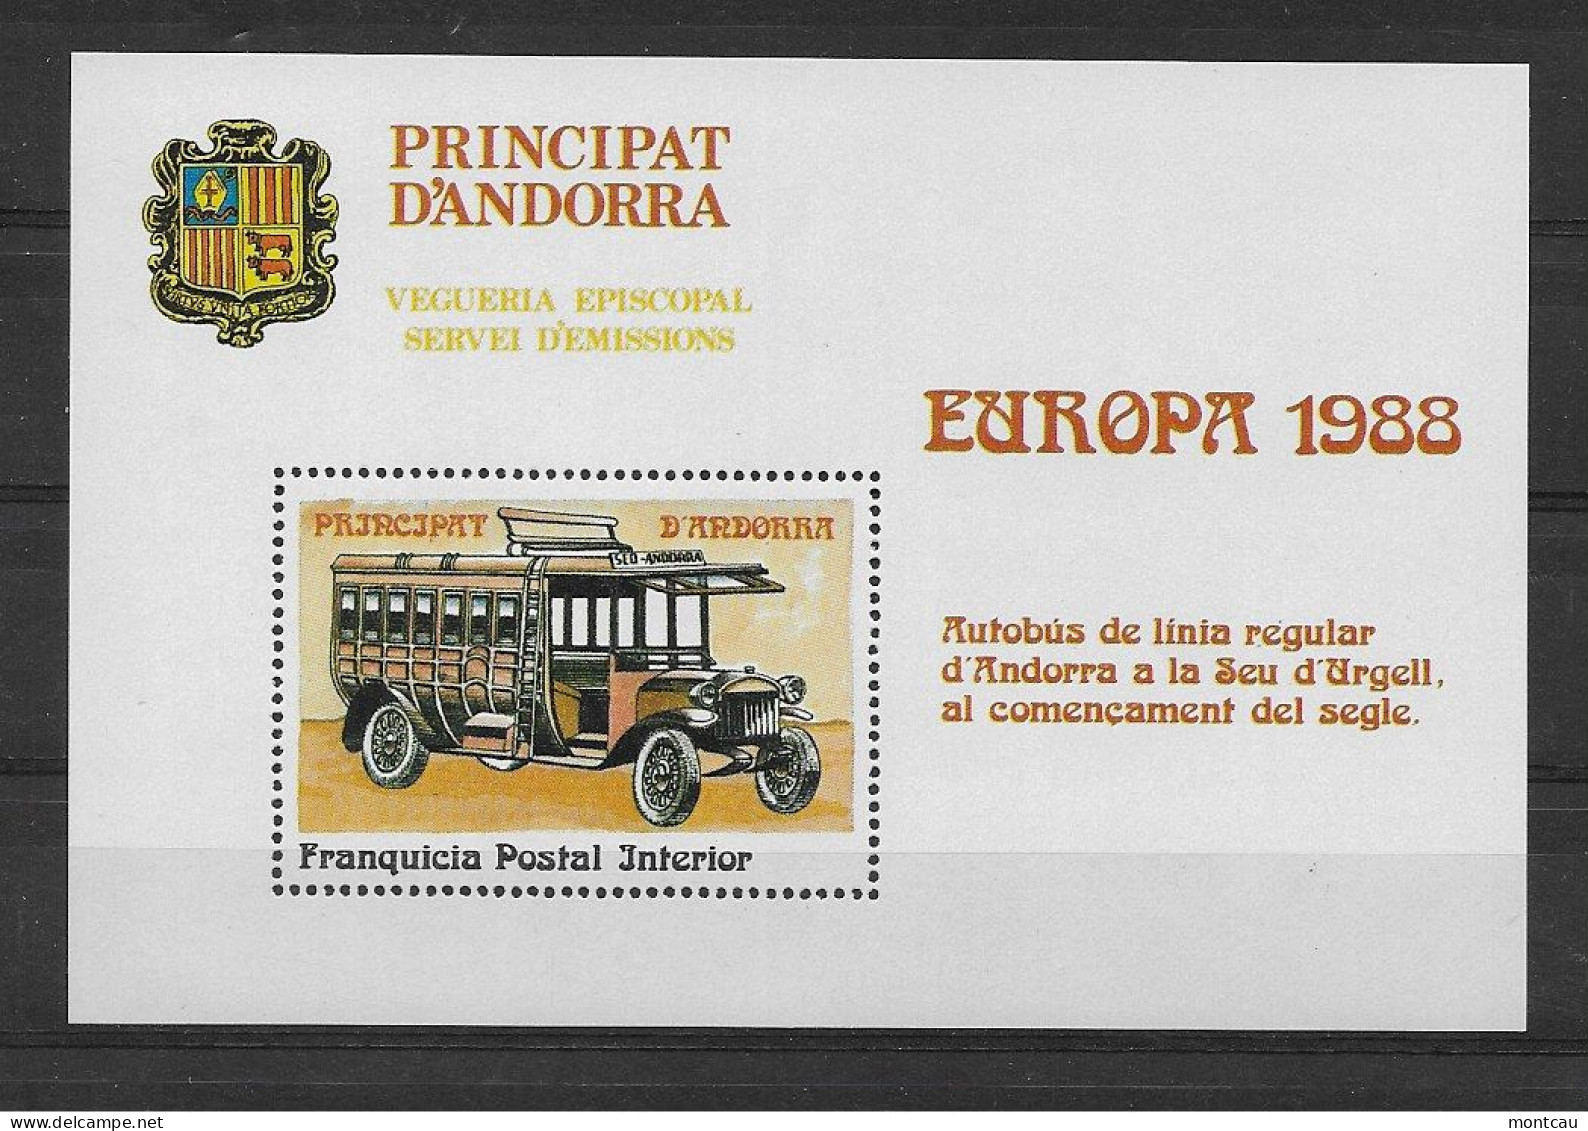 Andorra - 1988 - Vegueria Episcopal Europa - Viguerie Episcopale